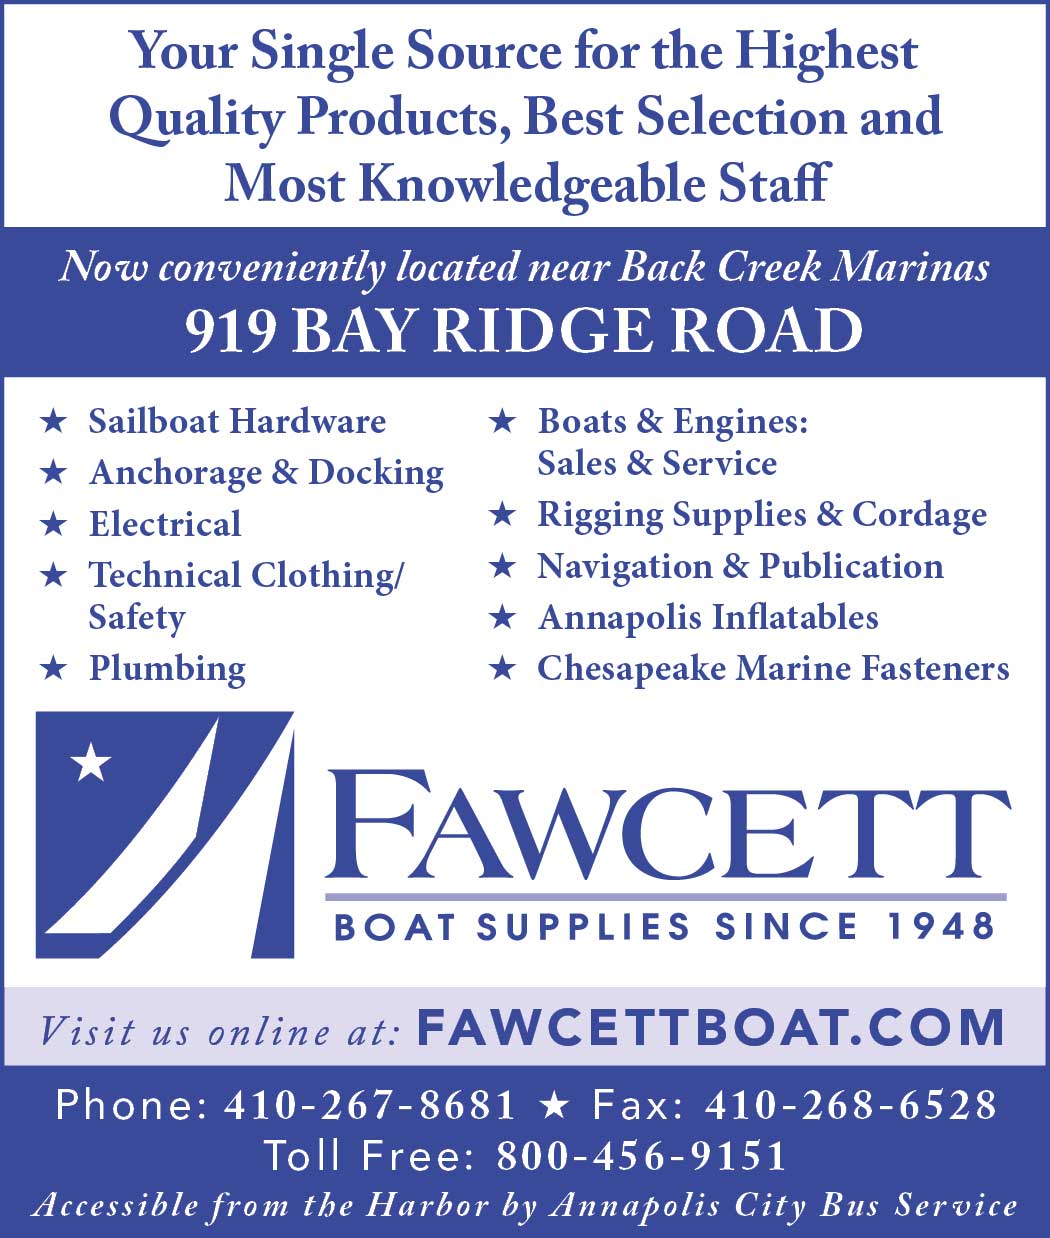 Fawcett Boat Supplies